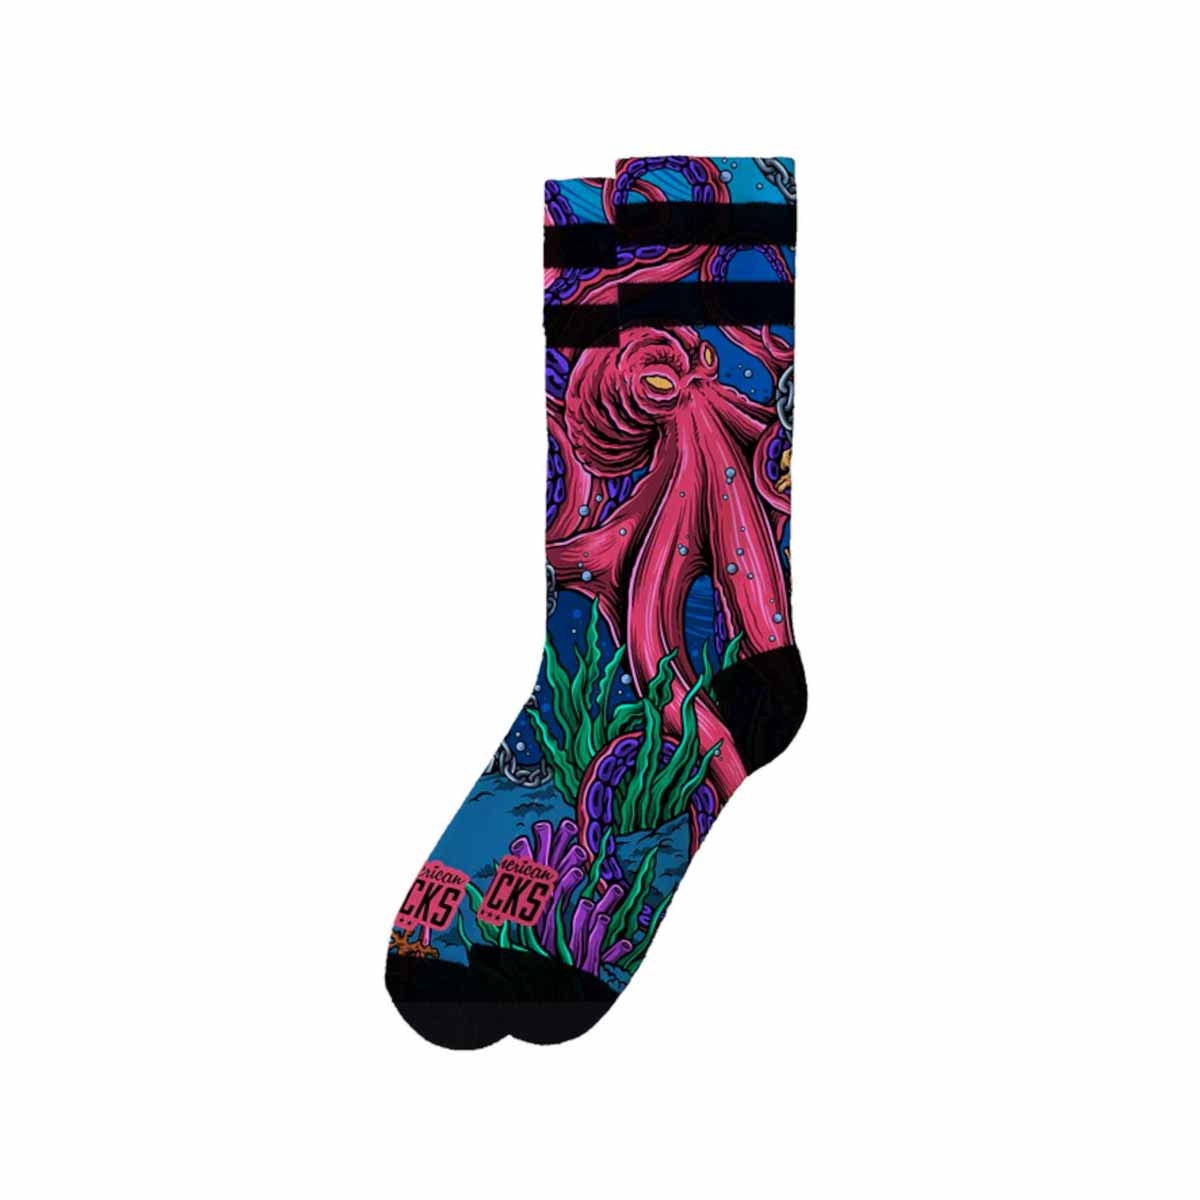 American Socks Octopus Signature Mid High